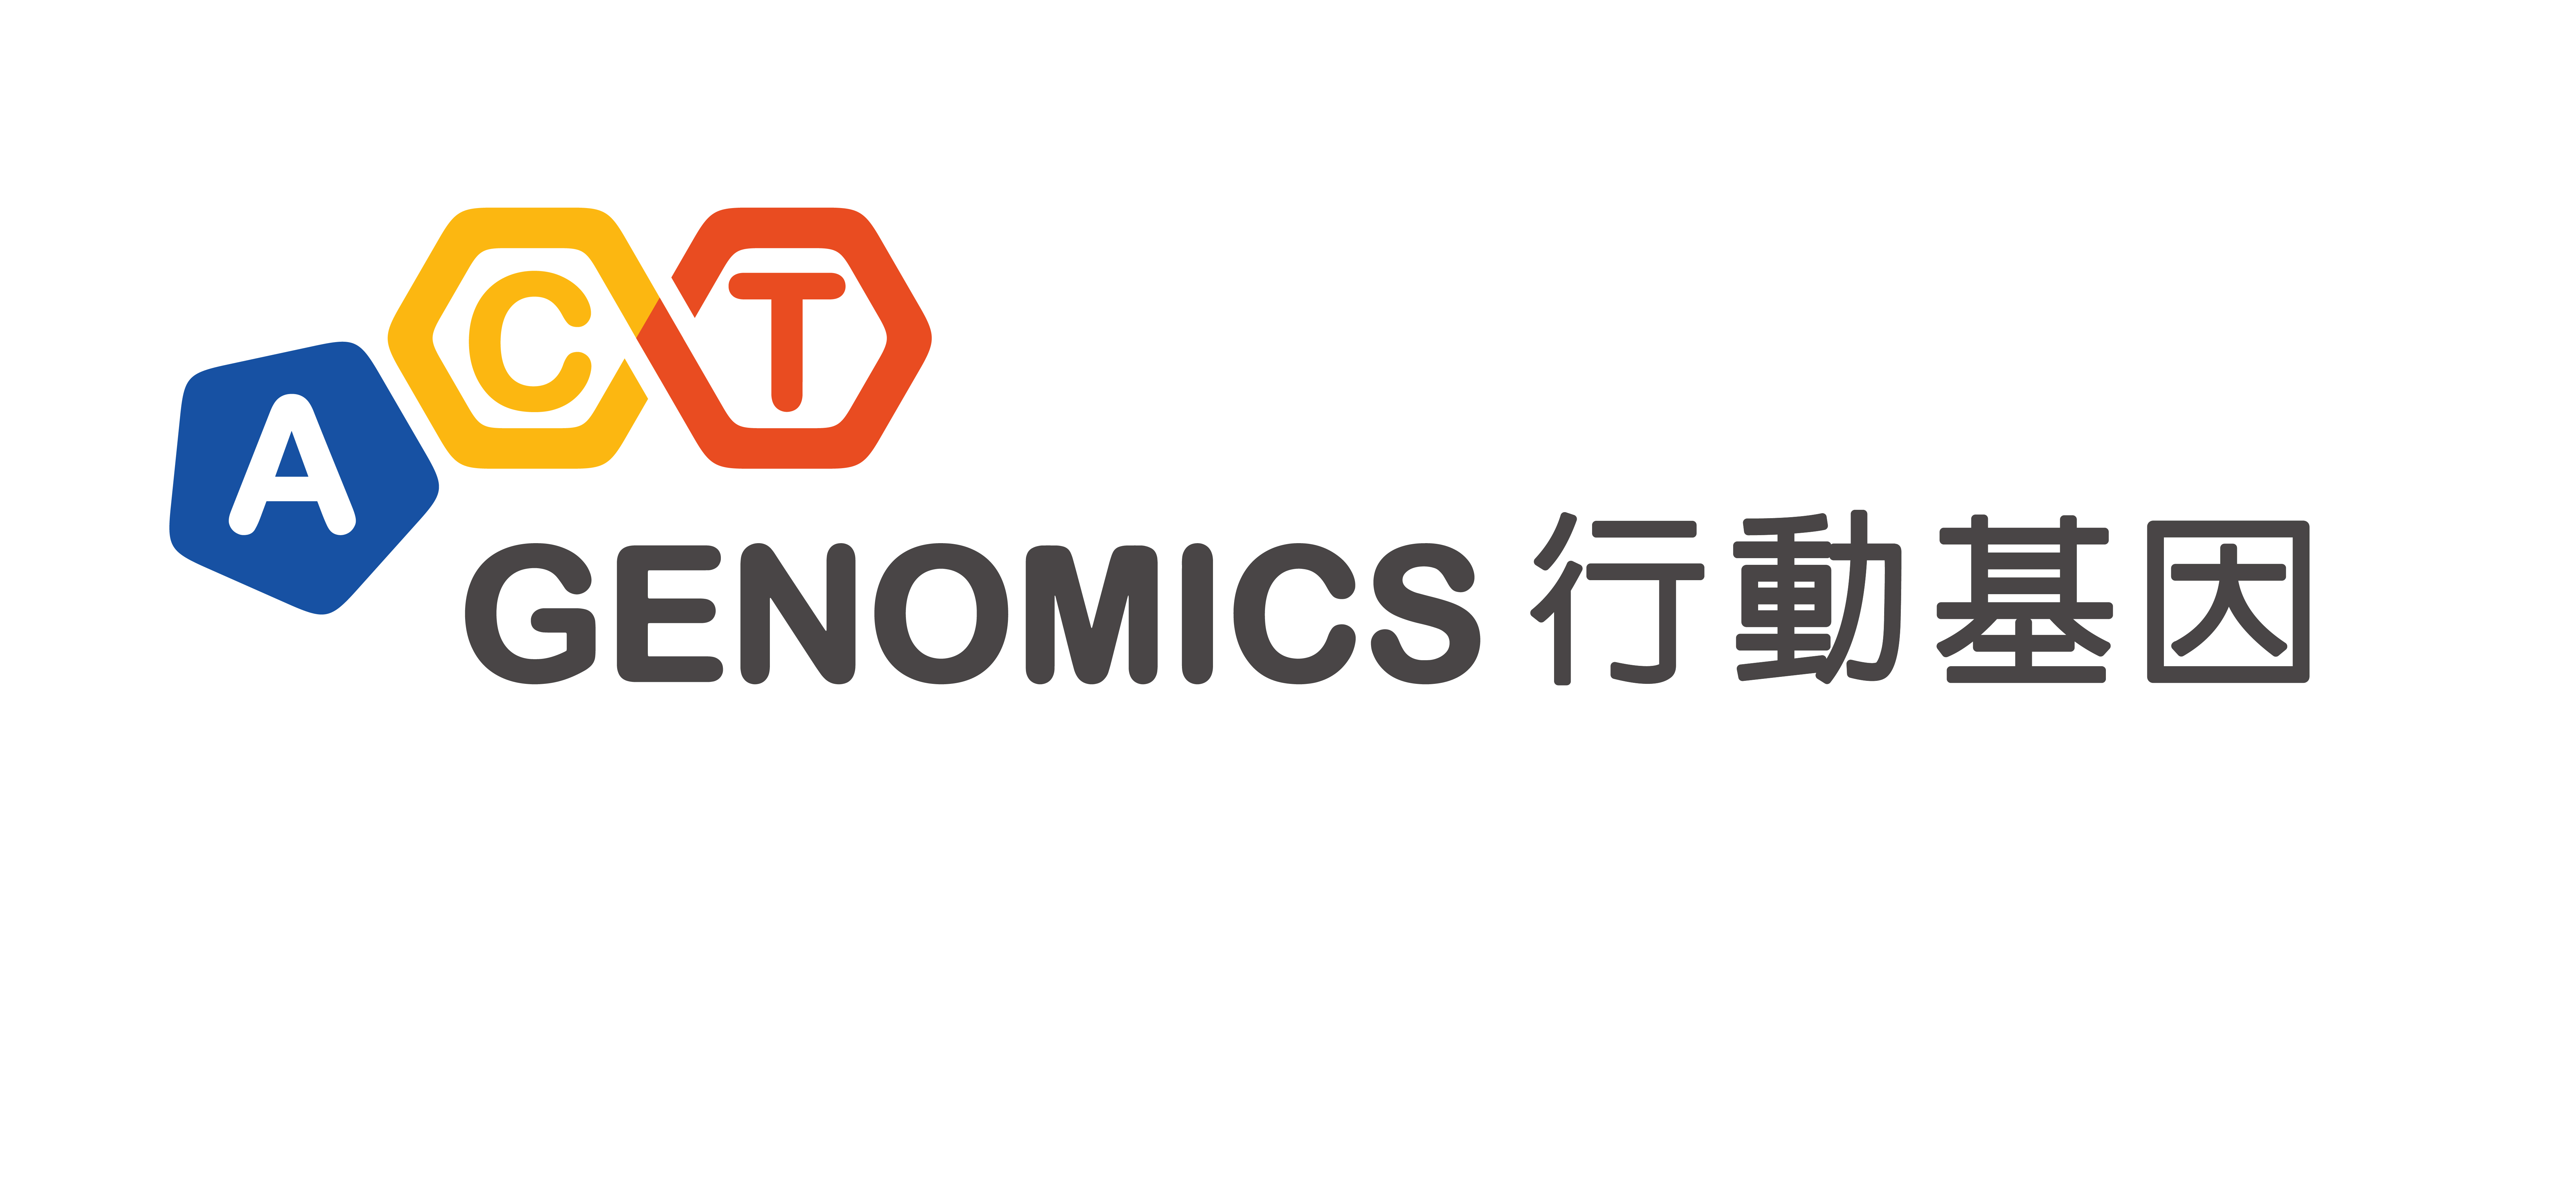 ACTG logo 行動基因-01.jpg